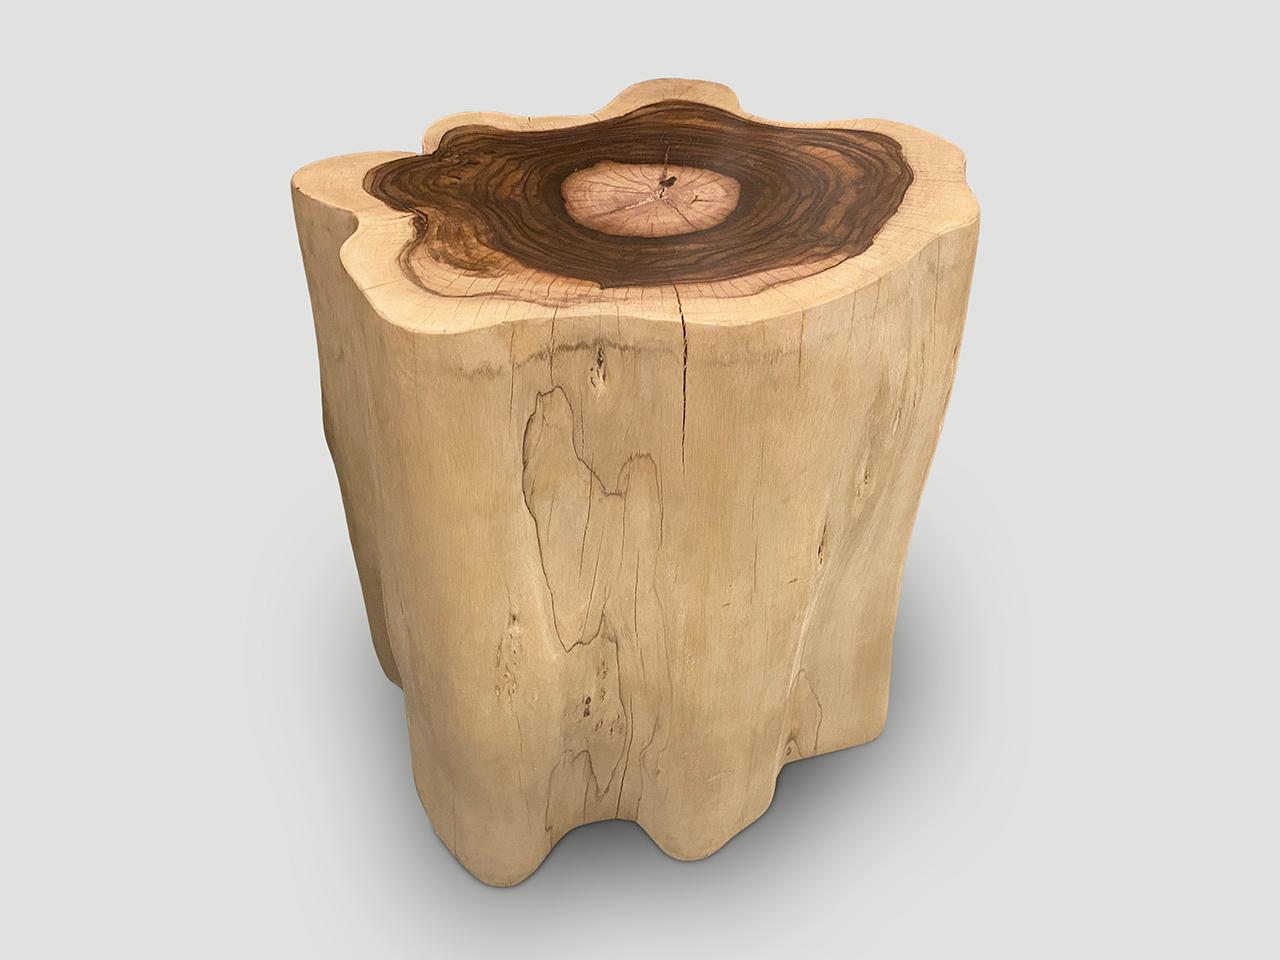 Skulpturaler Beistelltisch oder Sockel in Übergröße. Ein sehr seltenes Holz, das auch als Palisanderholz bekannt ist. Wir haben die Seiten gebleicht und die Innenseite in schönen kontrastierenden Dunkelbrauntönen belassen. Der Sockel ist zwei bis